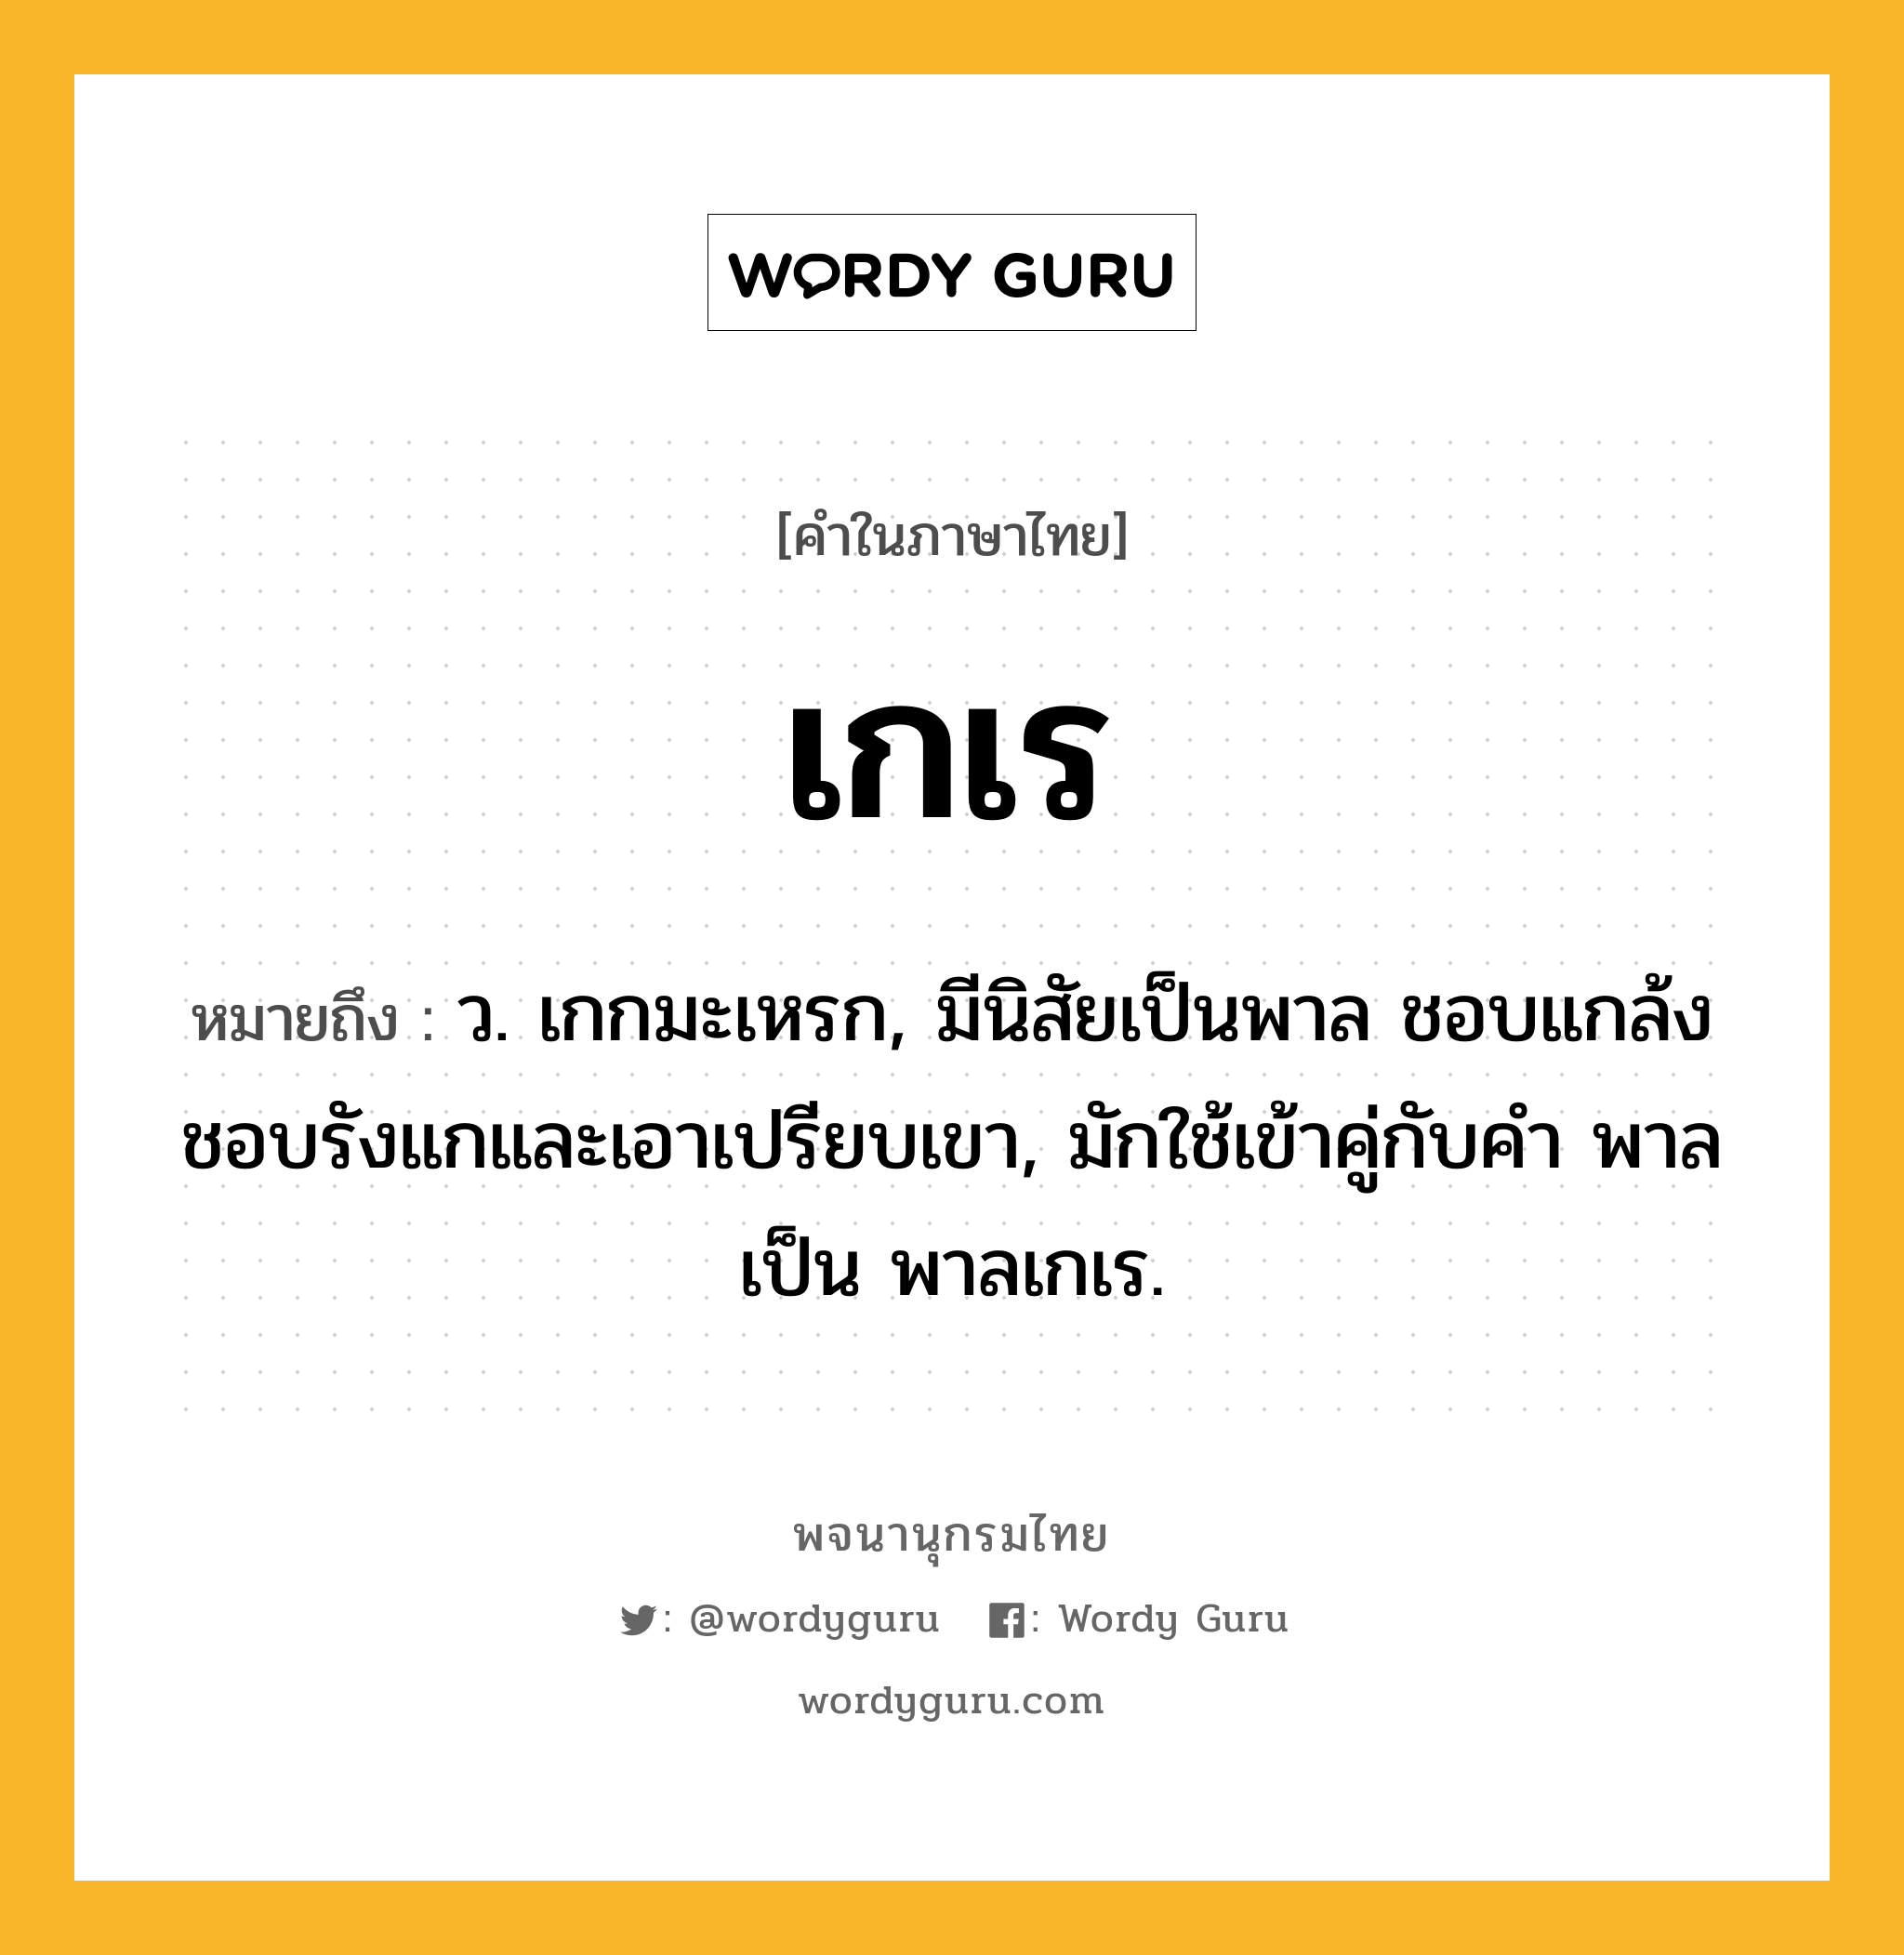 เกเร ความหมาย หมายถึงอะไร?, คำในภาษาไทย เกเร หมายถึง ว. เกกมะเหรก, มีนิสัยเป็นพาล ชอบแกล้งชอบรังแกและเอาเปรียบเขา, มักใช้เข้าคู่กับคํา พาล เป็น พาลเกเร.